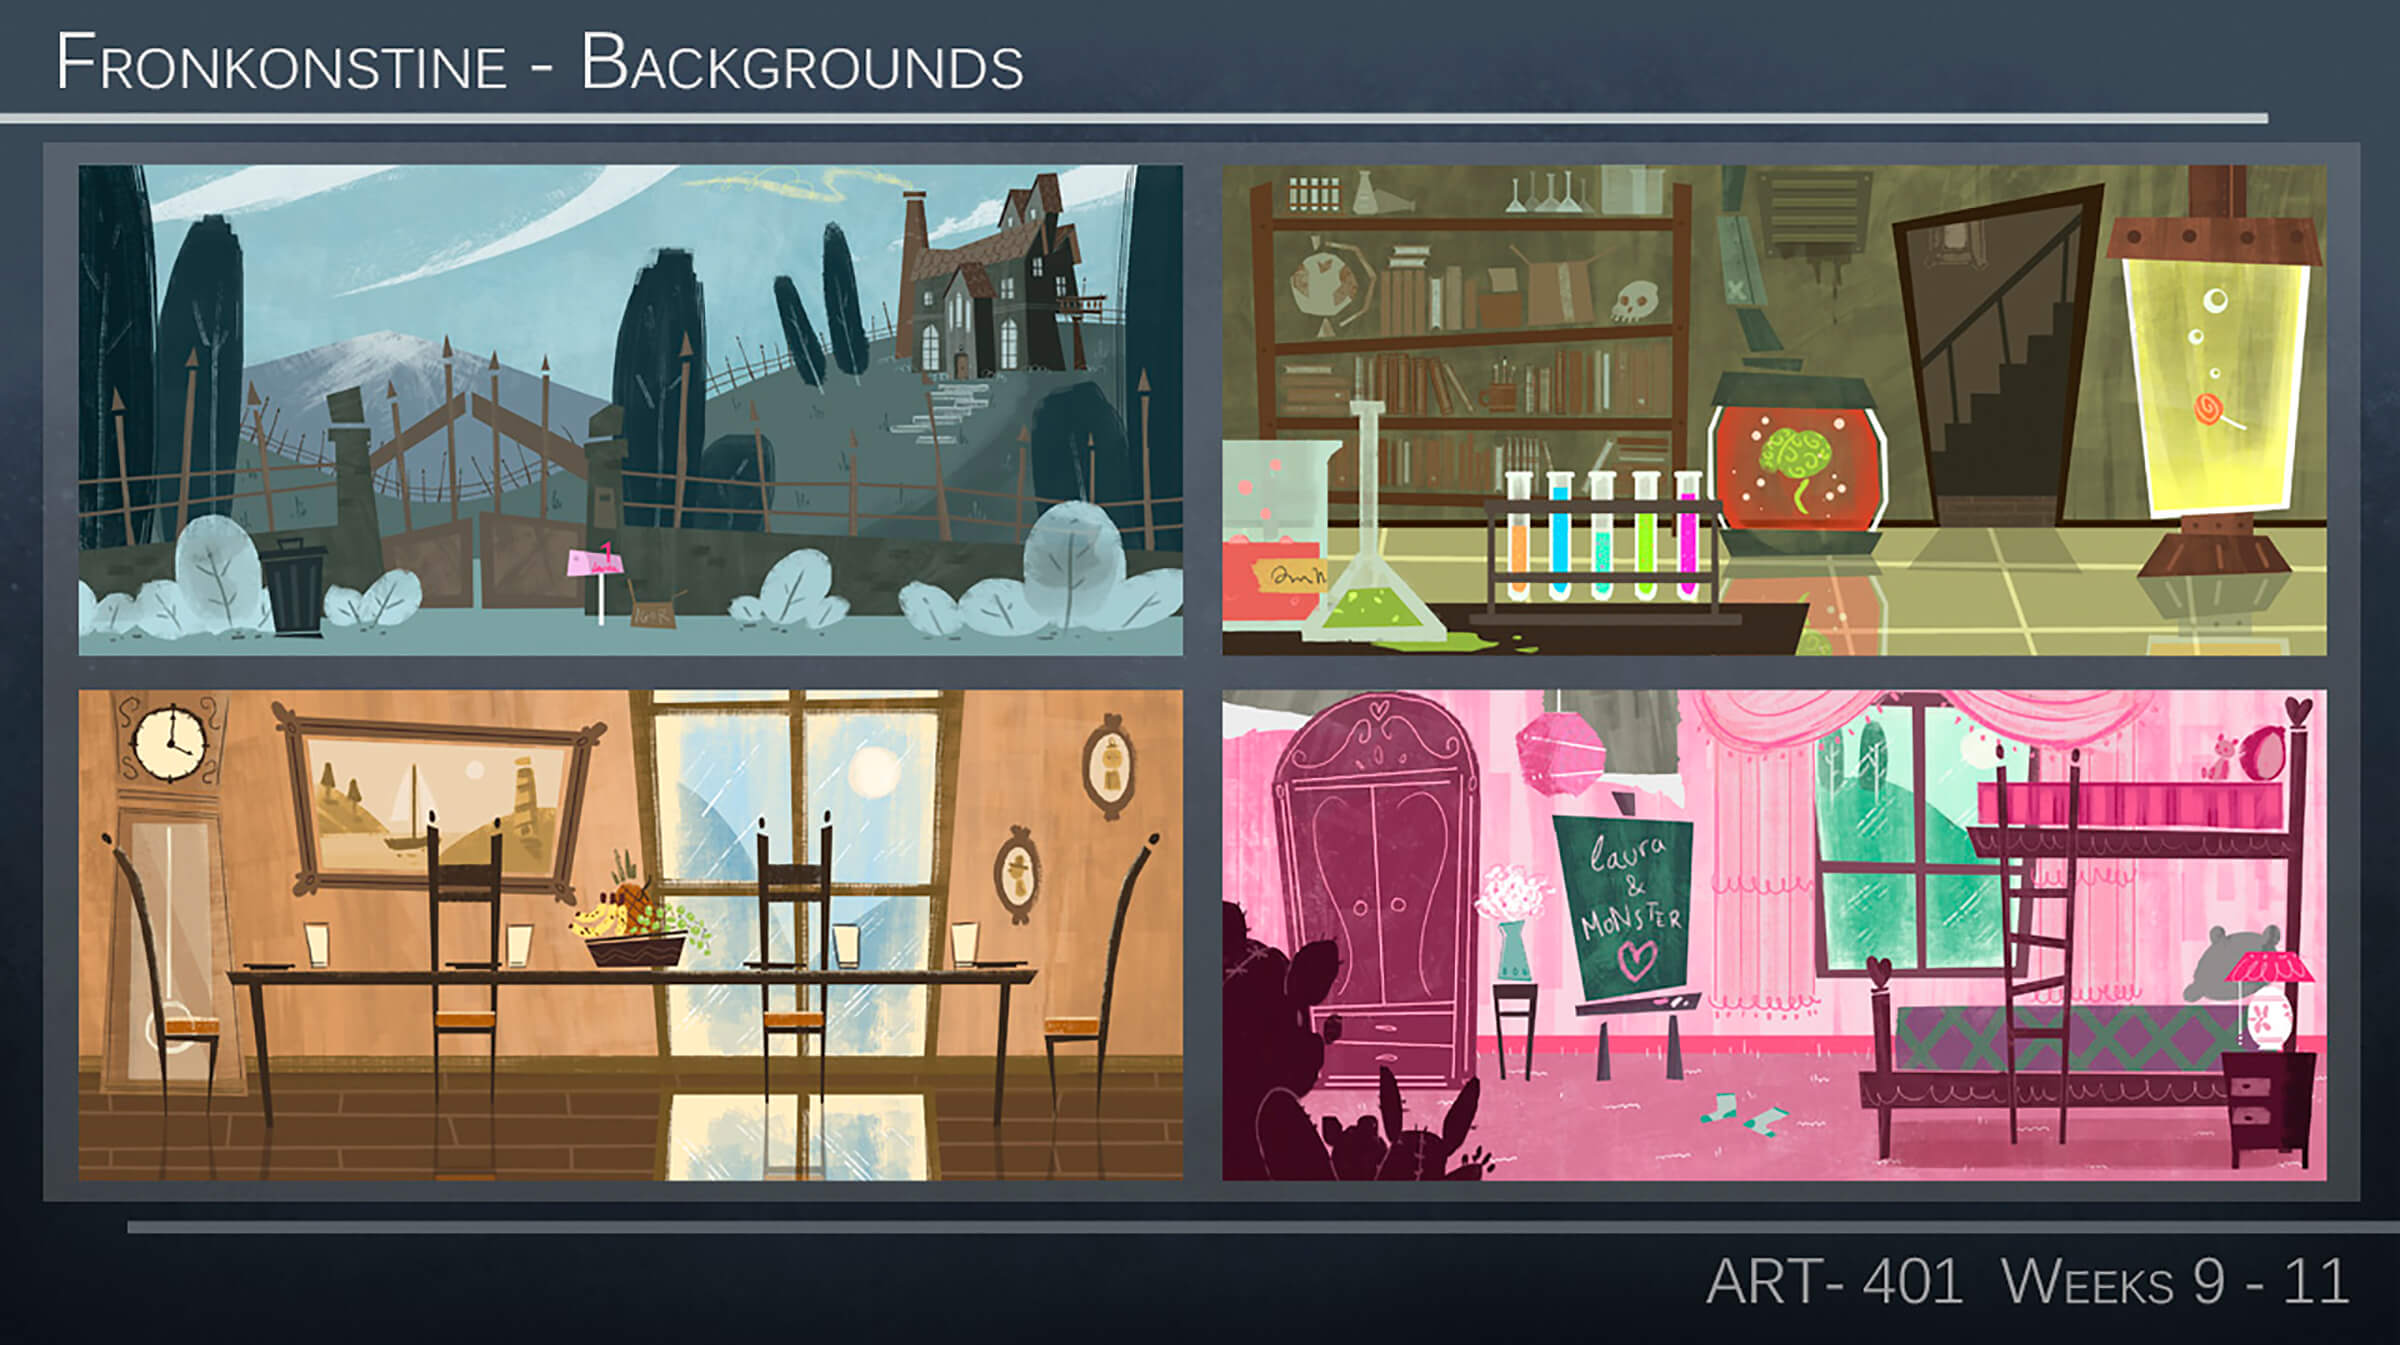 Panel de cuatro bocetos ambientales estilizados que representan un comedor, una finca, un laboratorio científico y un dormitorio infantil.